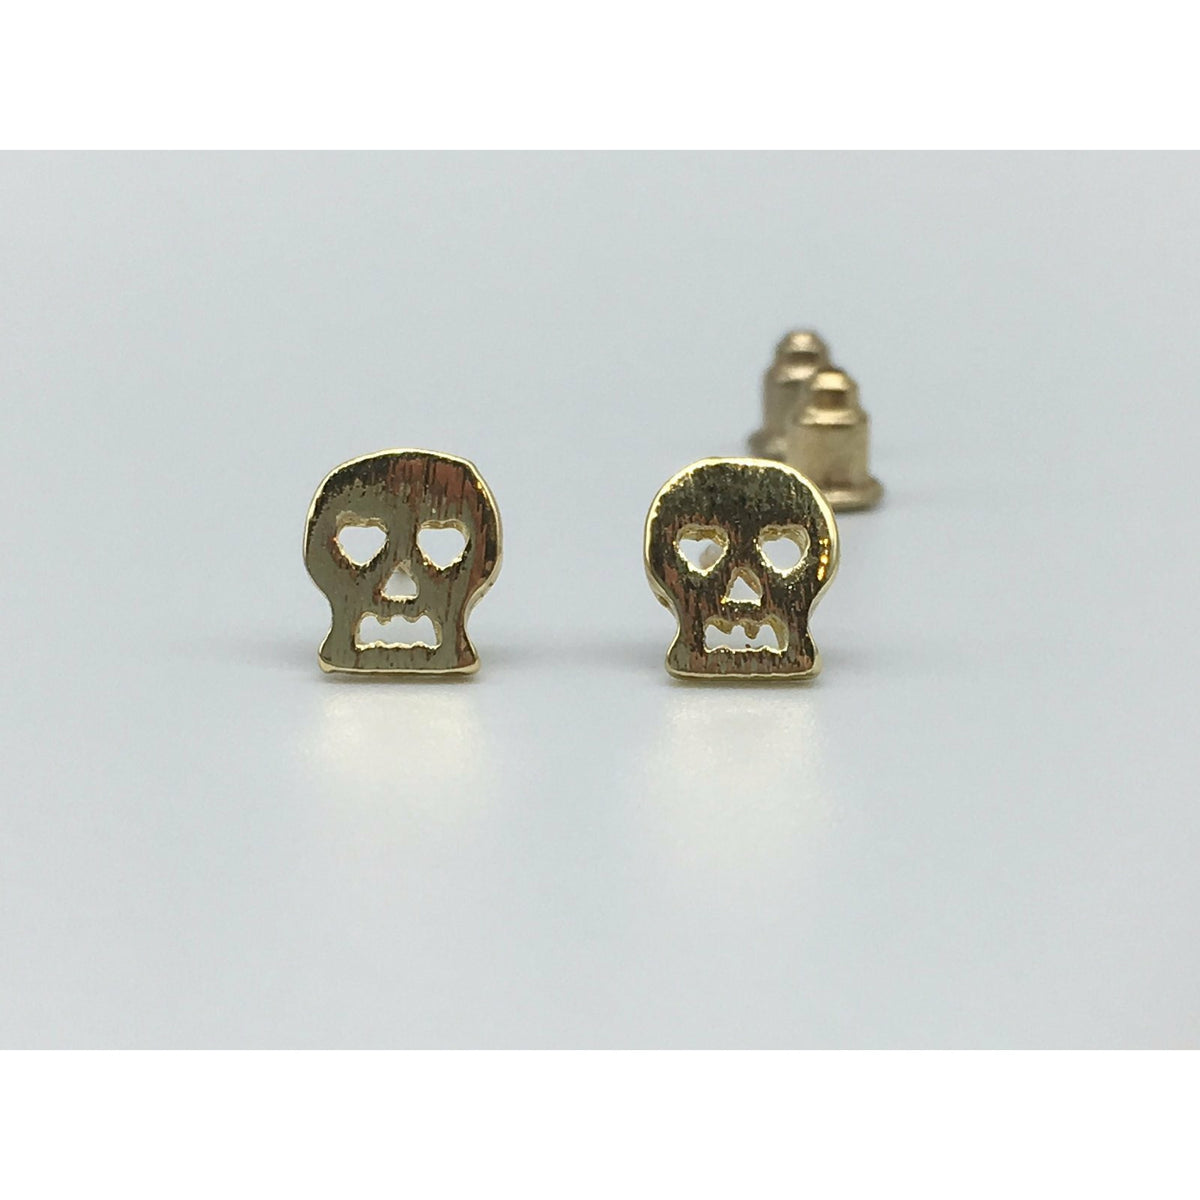 Tween to Teen Earrings Gold Brushed Metal Skull Stud Earrings 0720252999937 tween and teen